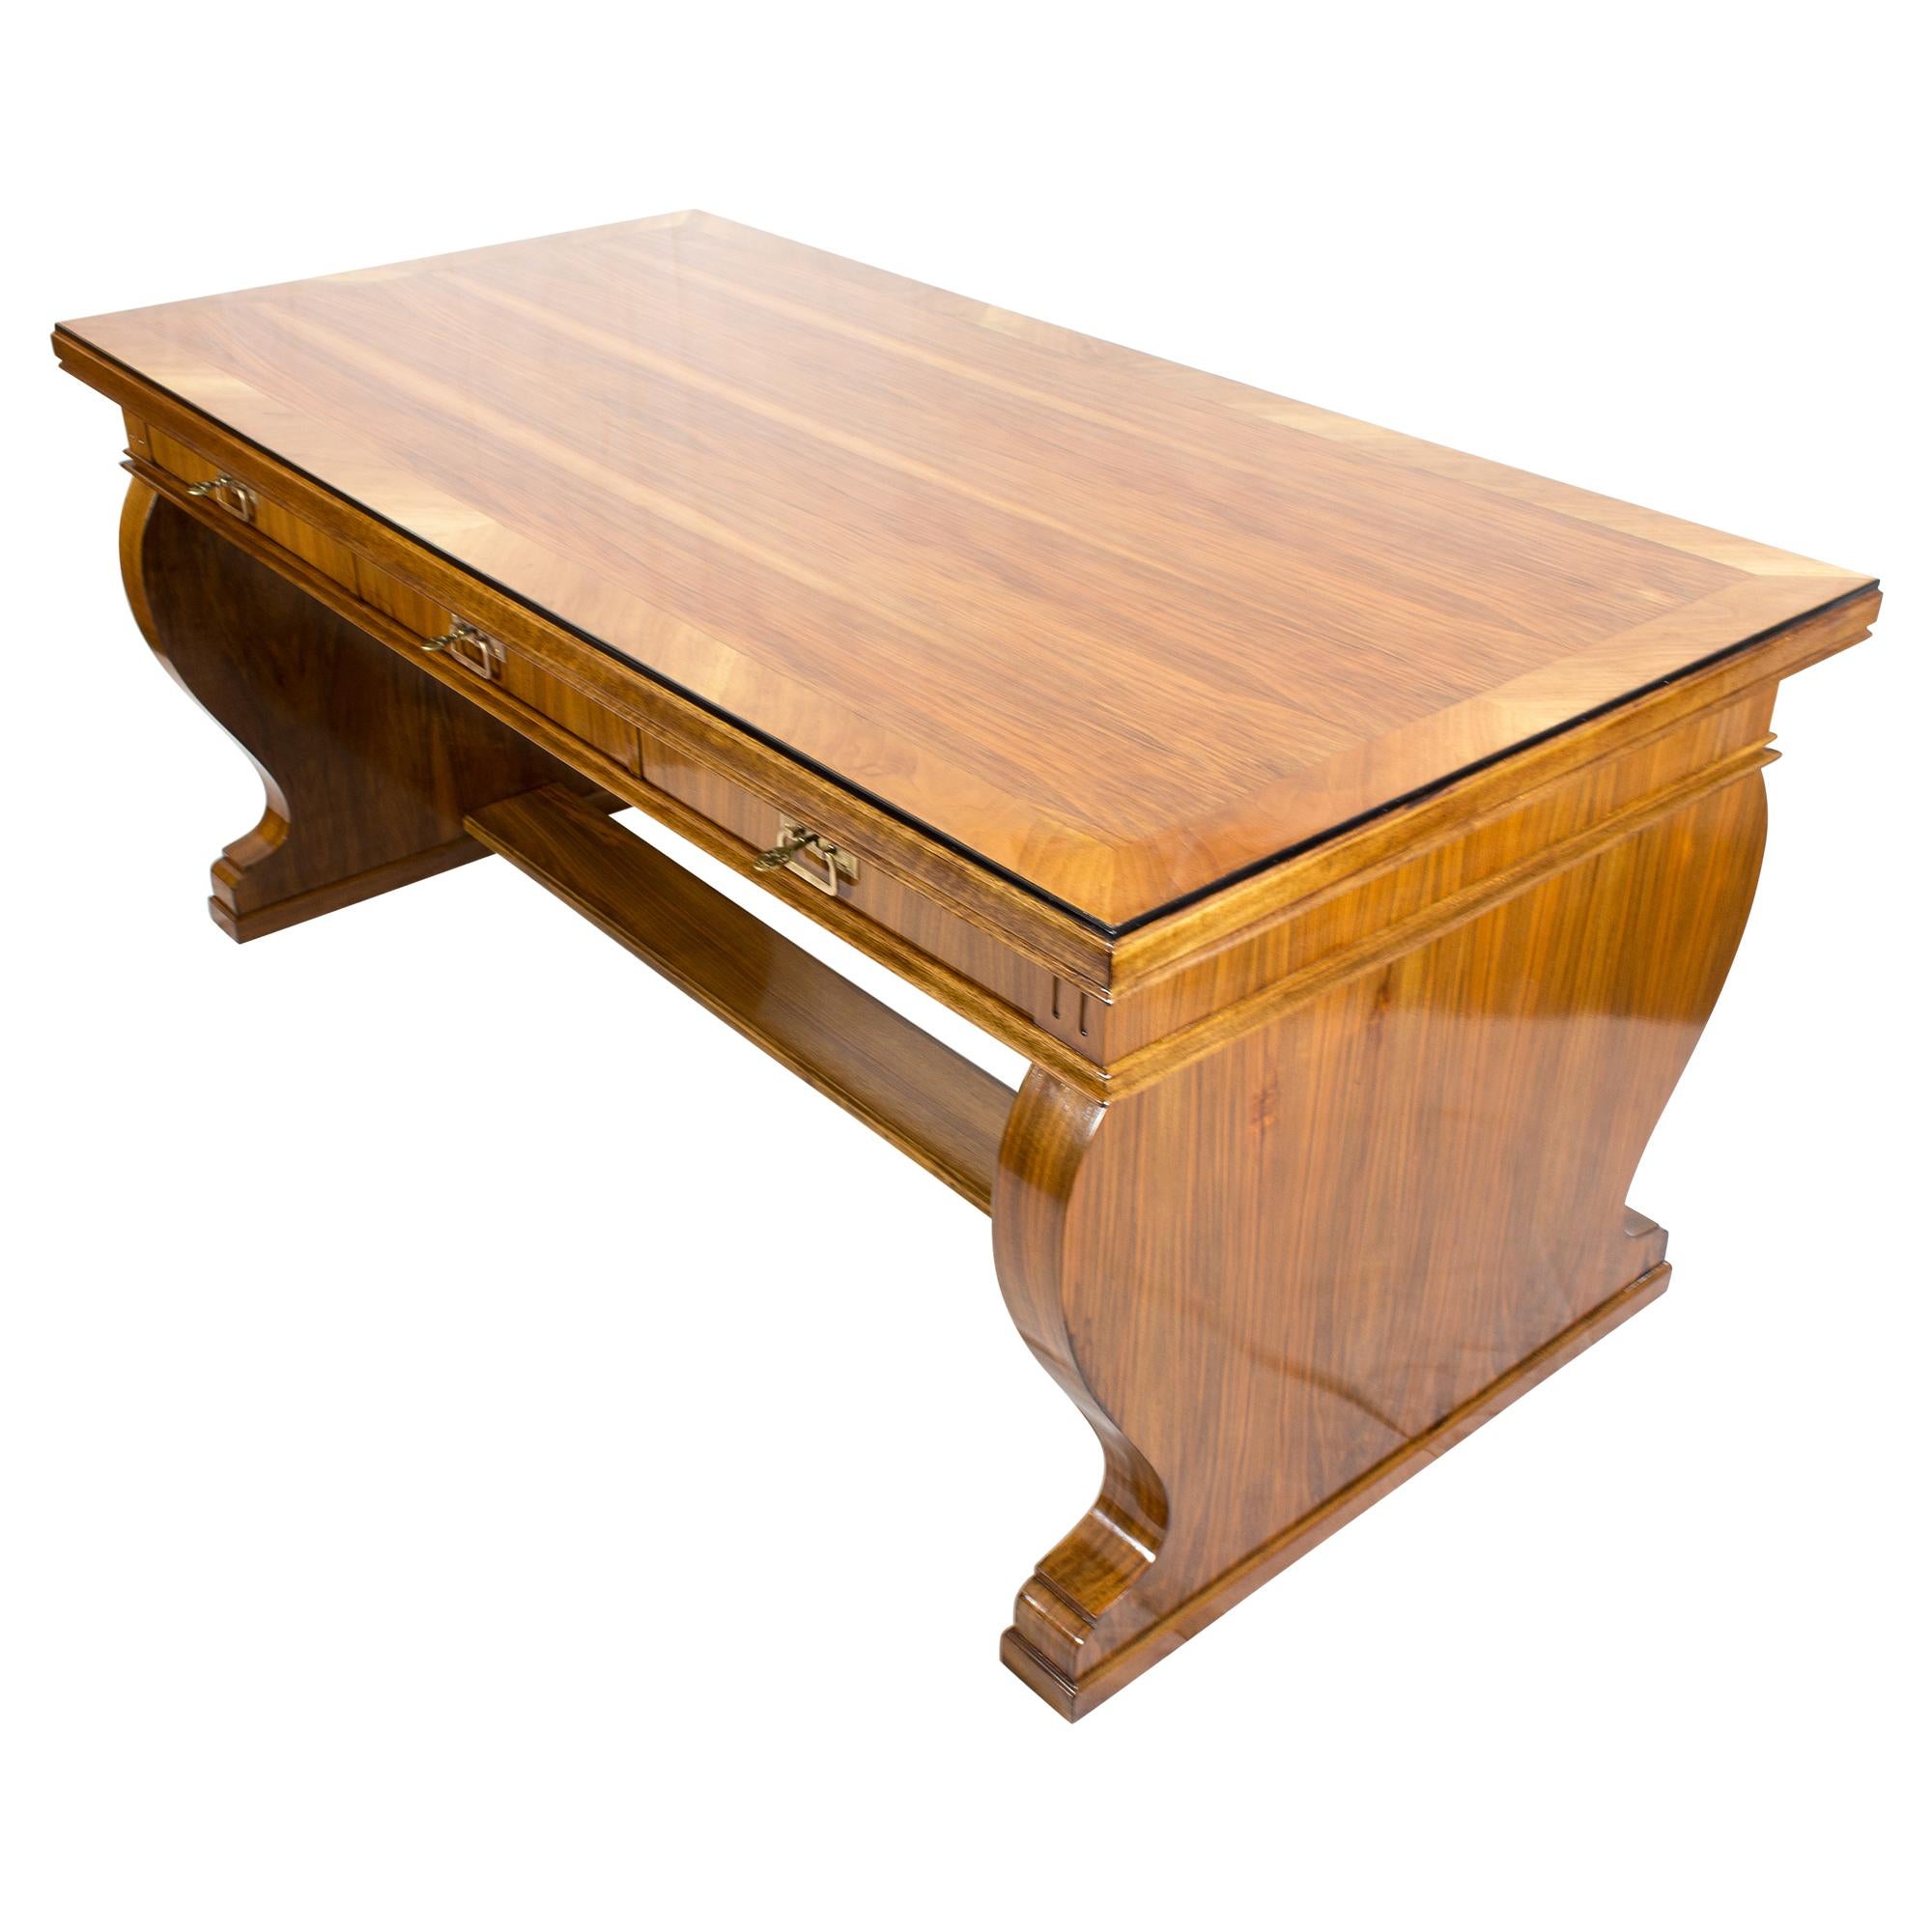 Sehr schöner großer Schreibtisch aus der Zeit um 1915, Übergang vom Jugendstil zum Art Déco. Der Schreibtisch wurde aus Nussbaumfurnier auf einem Korpus aus Kiefernholz gefertigt. Das Pult kann zentriert werden. Der Tisch hat 3 Schubladen und auf